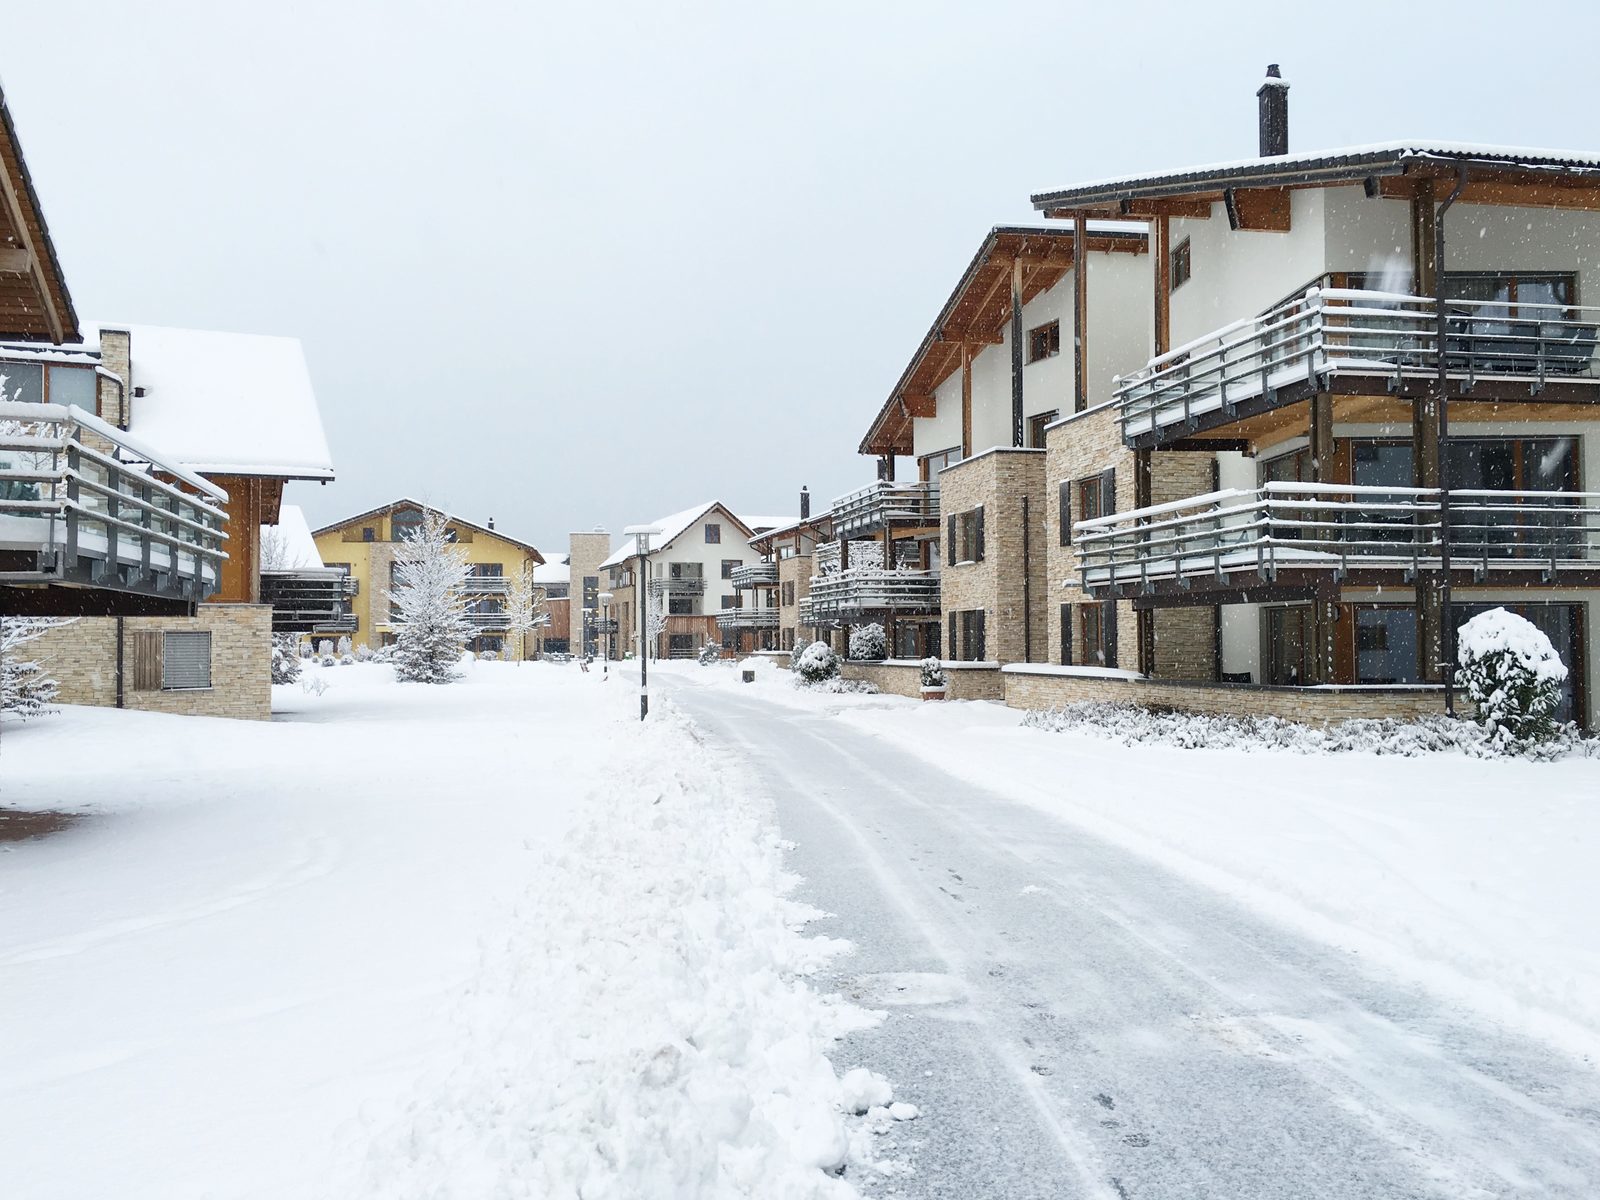 Vanuit uw vakantiewoning of appartement in Resort Walensee Heidiland staat u in 20 minuten op de Flumserberg om te snowboarden tijdens uw wintersportvakantie